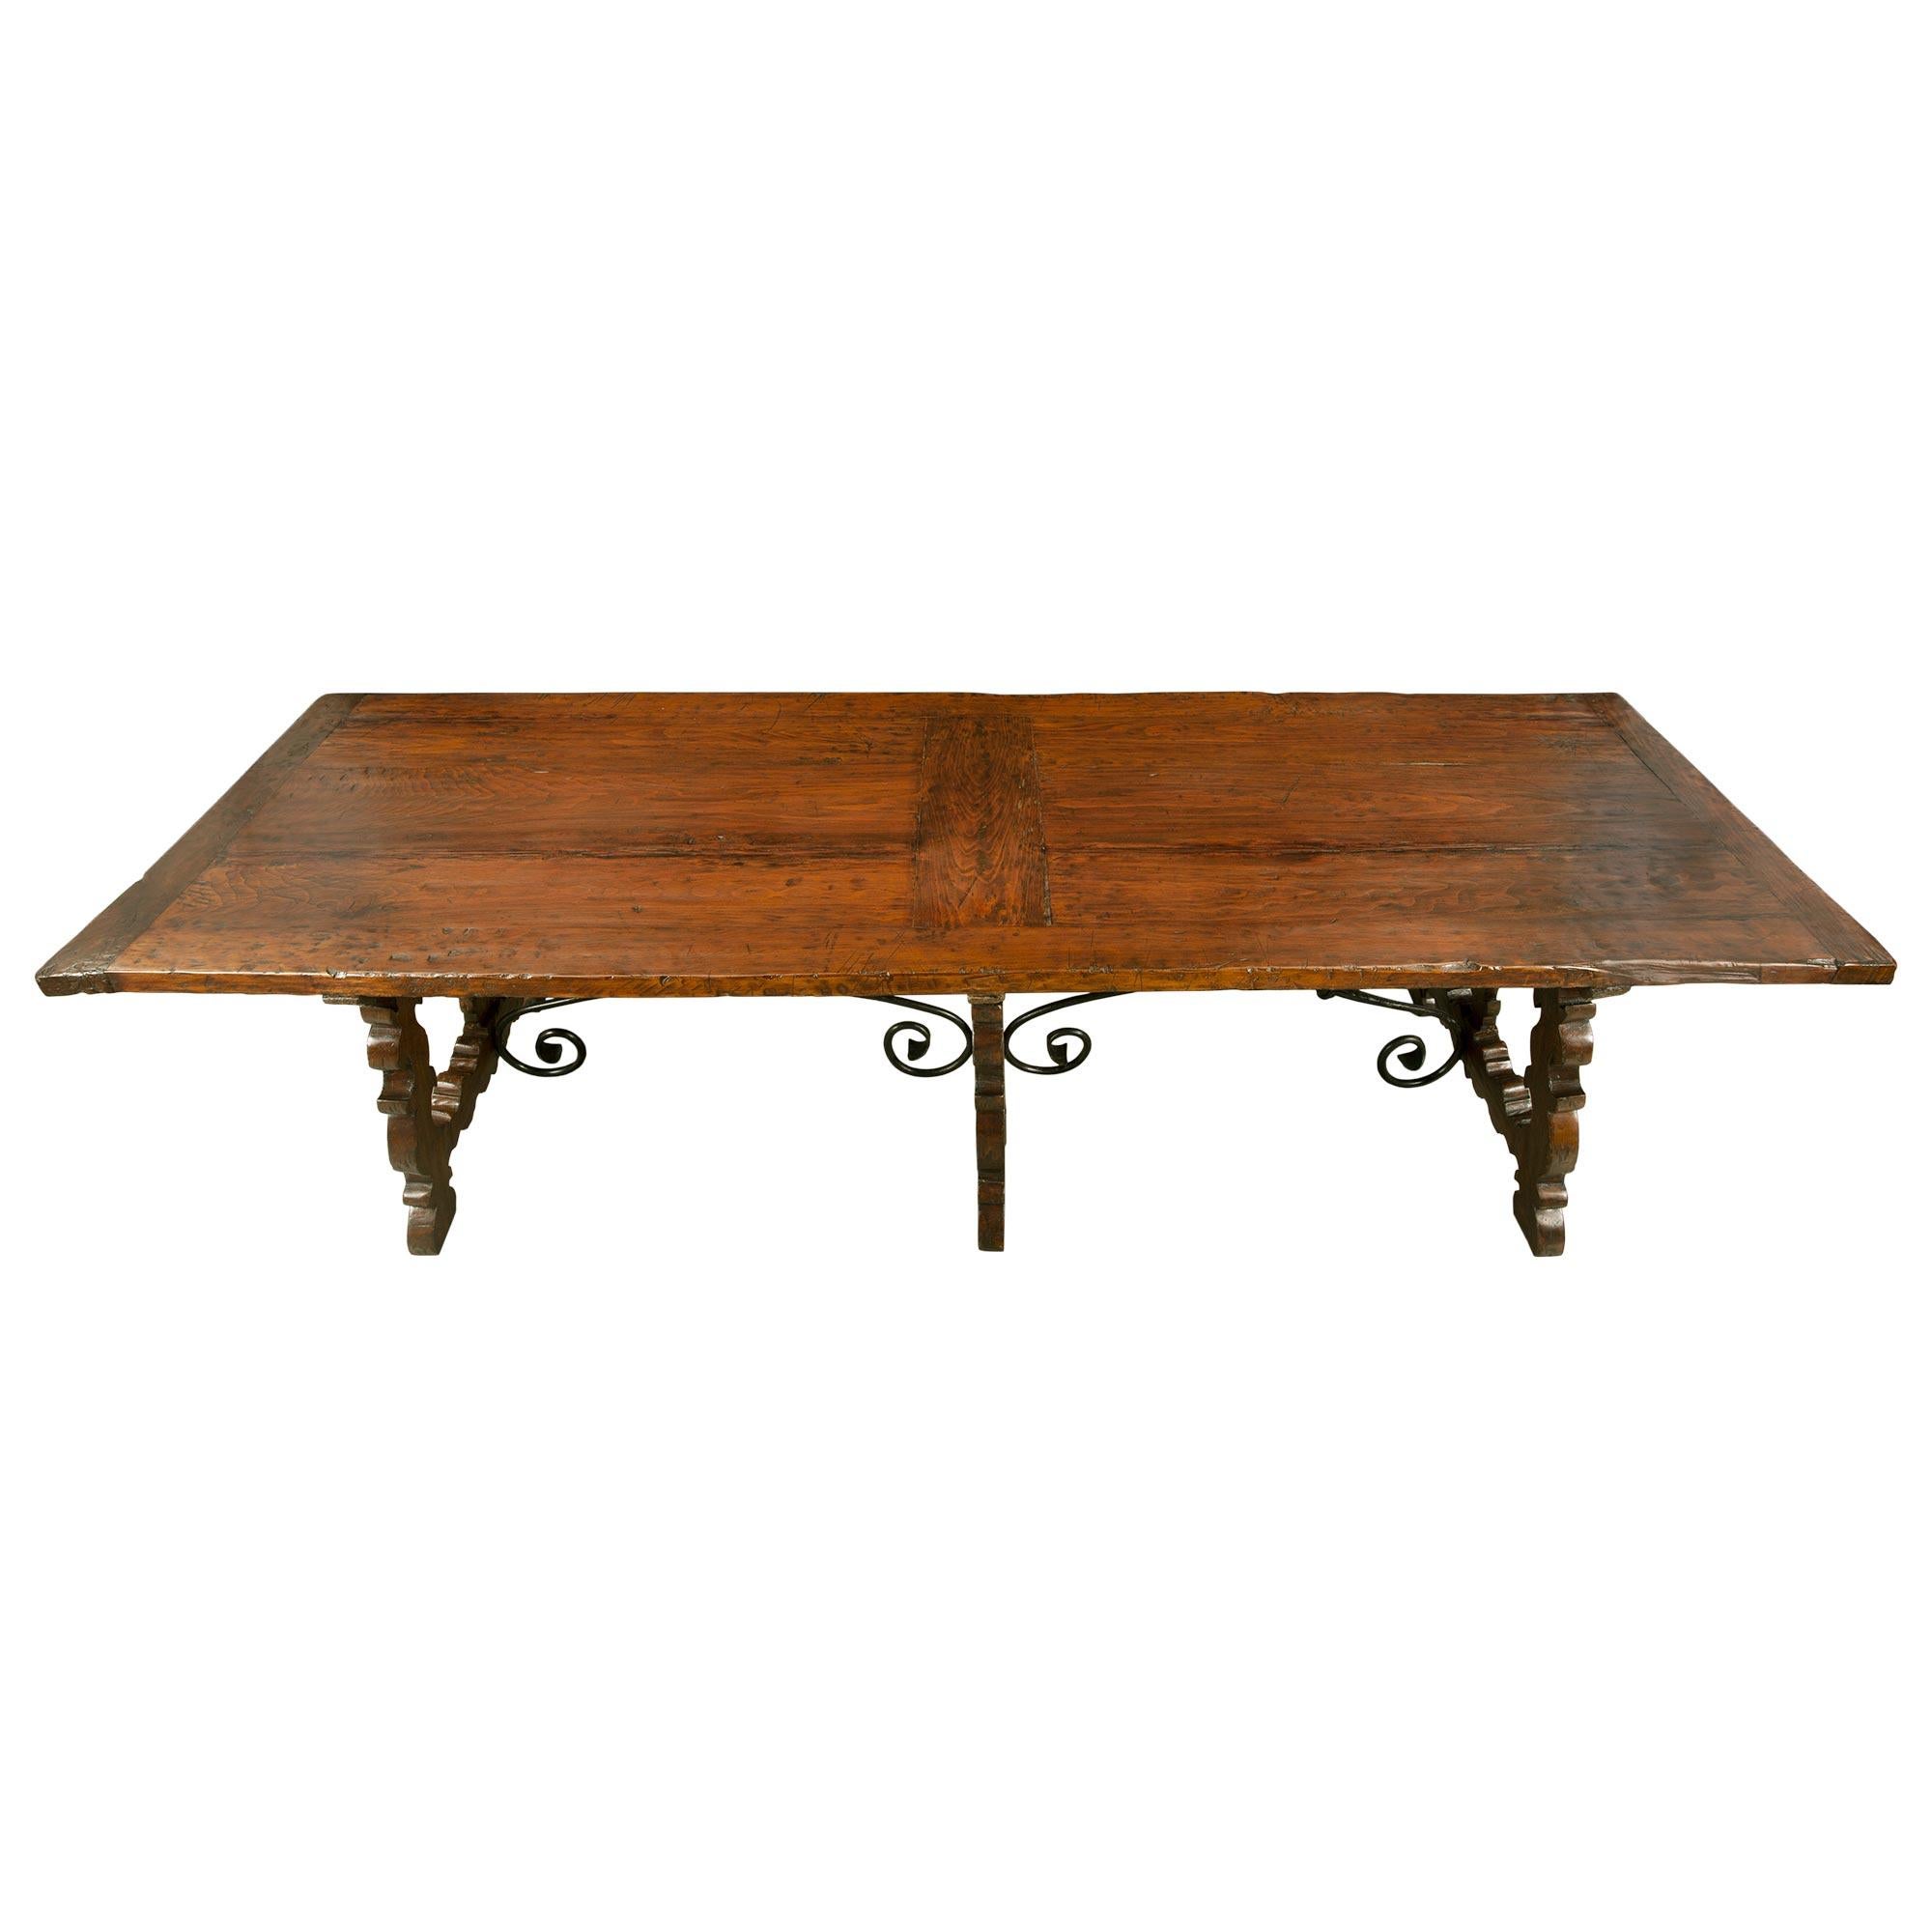 Une table à tréteaux en noyer unique et très décorative du 19ème siècle en provenance de Toscane. La table est surélevée par trois beaux supports avec des motifs feuillus finement sculptés, des montures en fer en forme de X de chaque côté et des